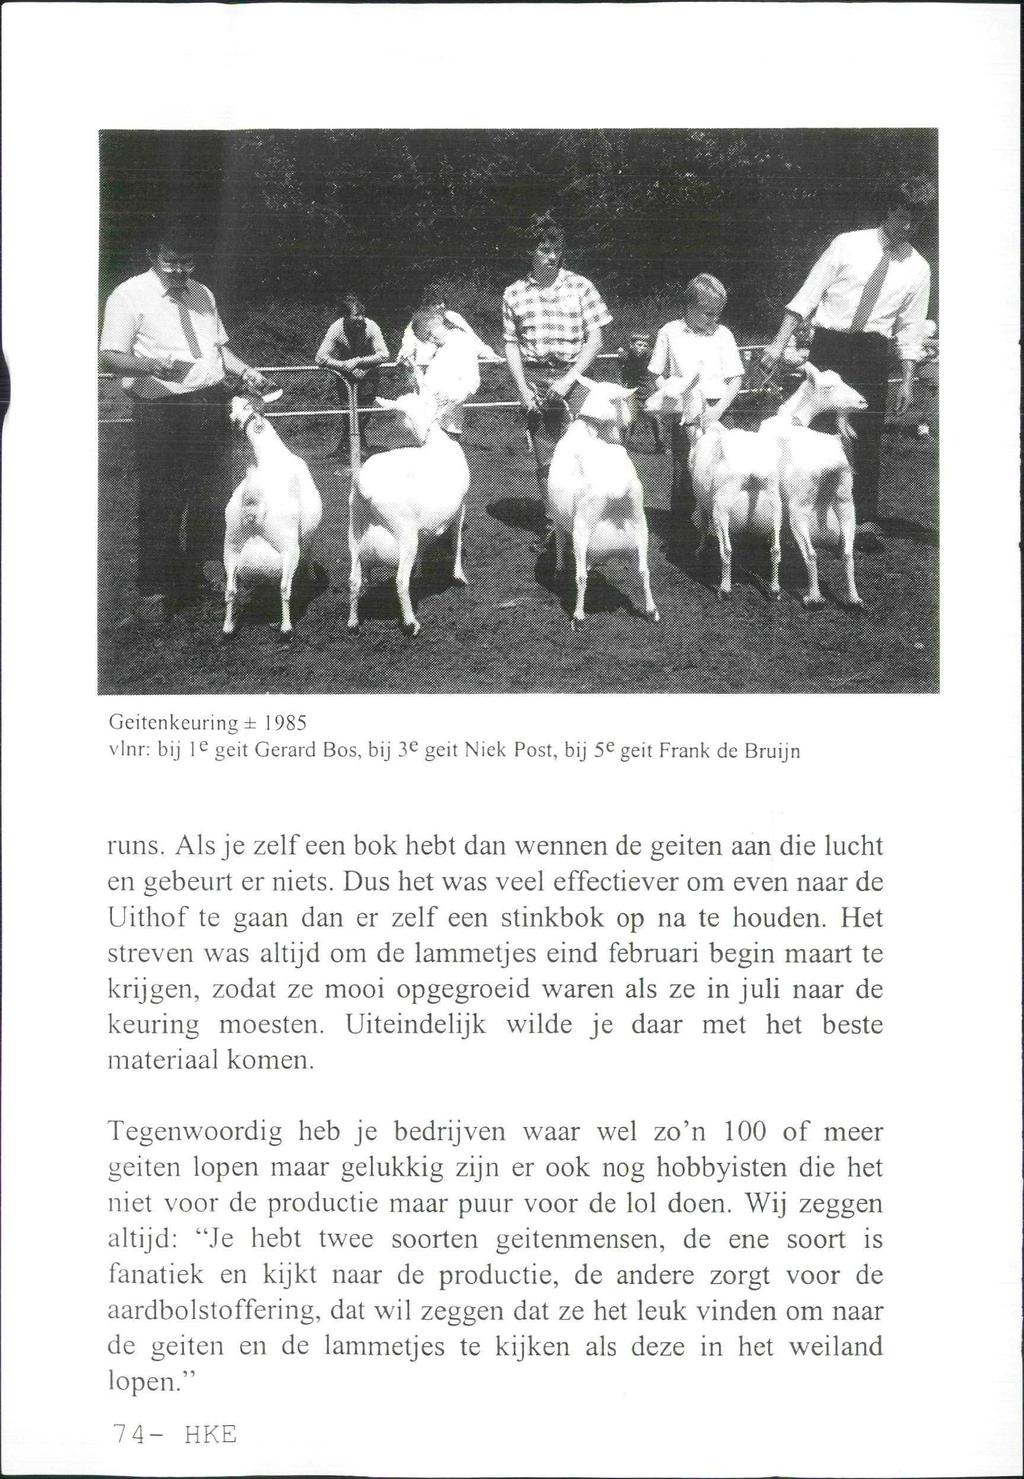 Geitenkeuringi 1985 vlnr: bij I e geit Gerard Bos, bij 3 e geit Niek Post, bij 5 e geit Frank de Bruijn runs. Als je zelf een bok hebt dan wennen de geiten aan die lucht en gebeurt er niets.